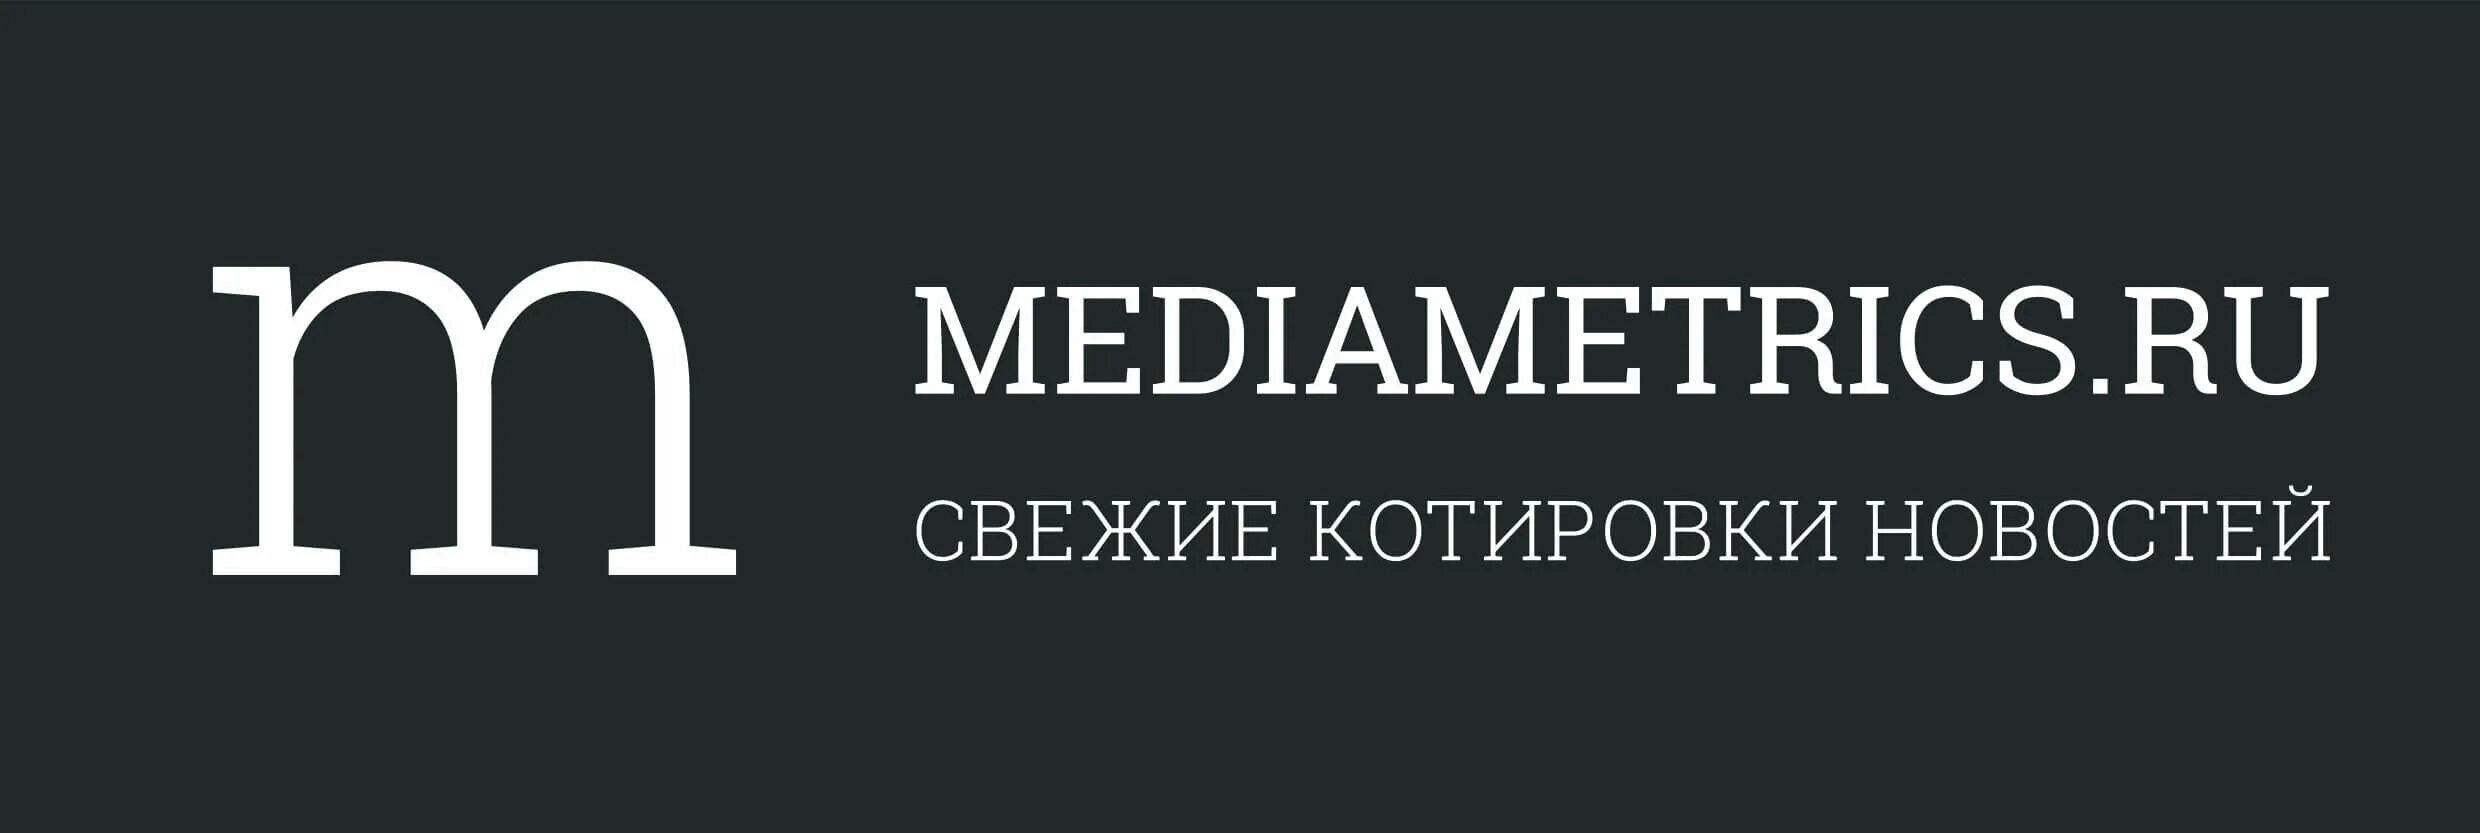 Медиаметрикс. Mediametrics логотип. Радио mediametrics. Радио Медиаметрикс лого. Mediametrics ru россия